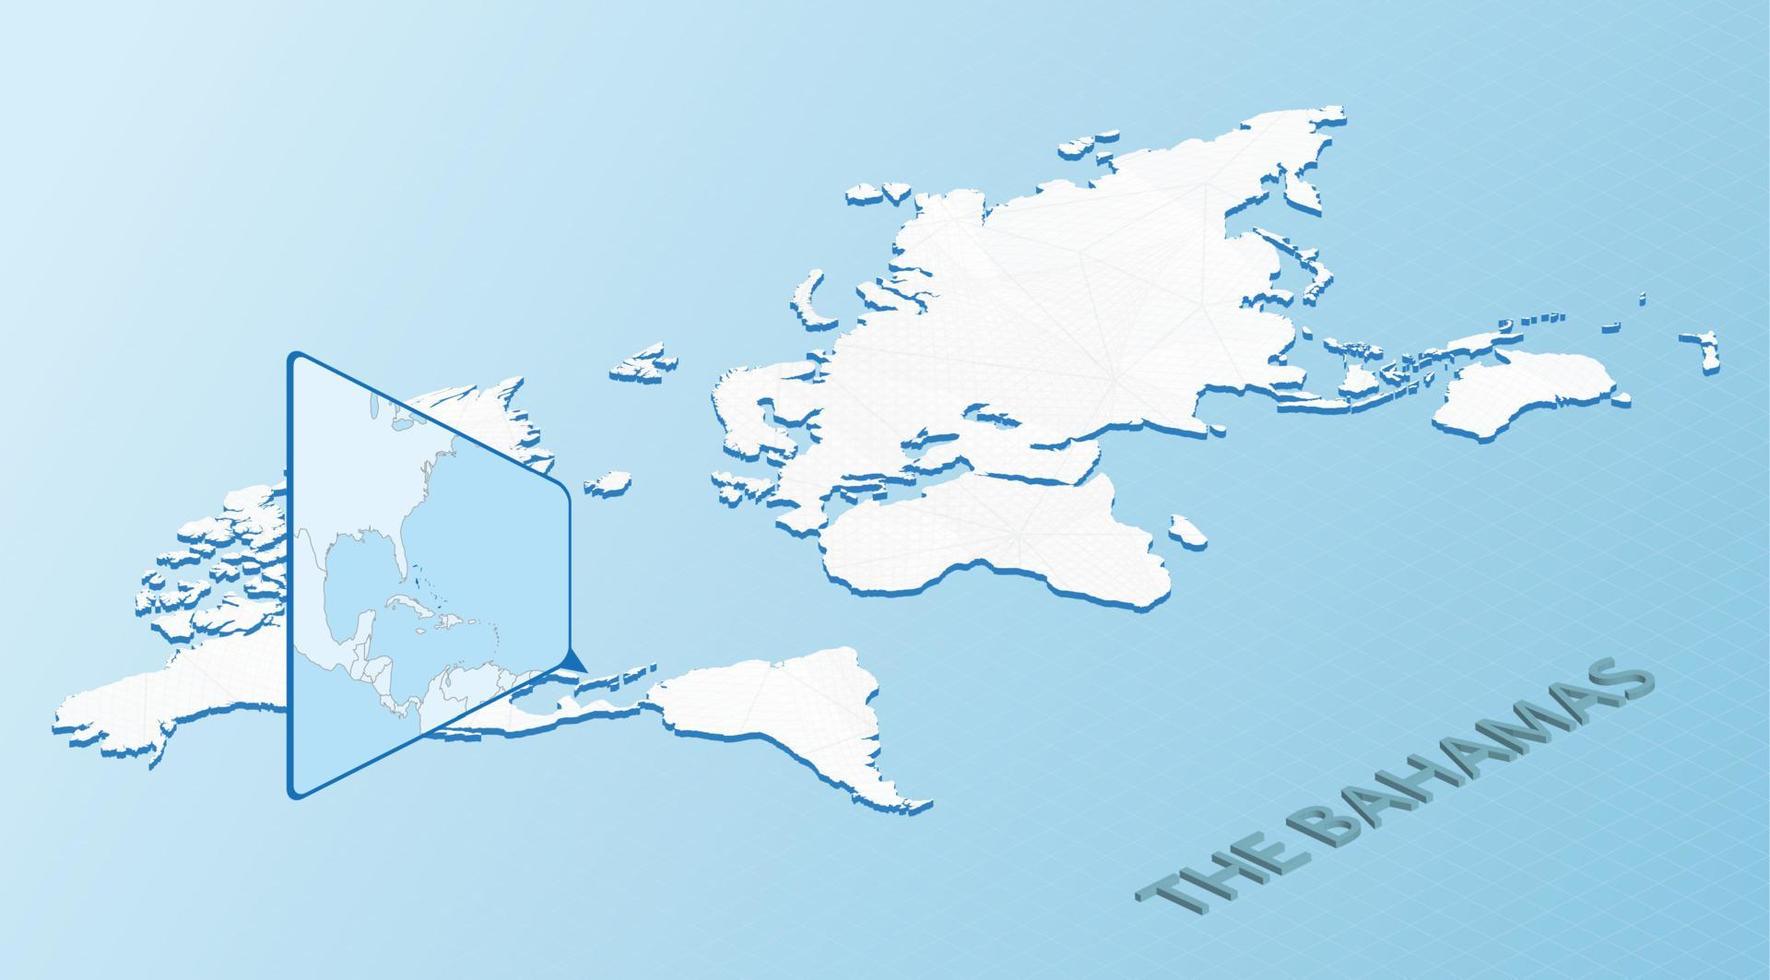 Weltkarte im isometrischen Stil mit detaillierter Karte der Bahamas. hellblau die bahamas-karte mit abstrakter weltkarte. vektor